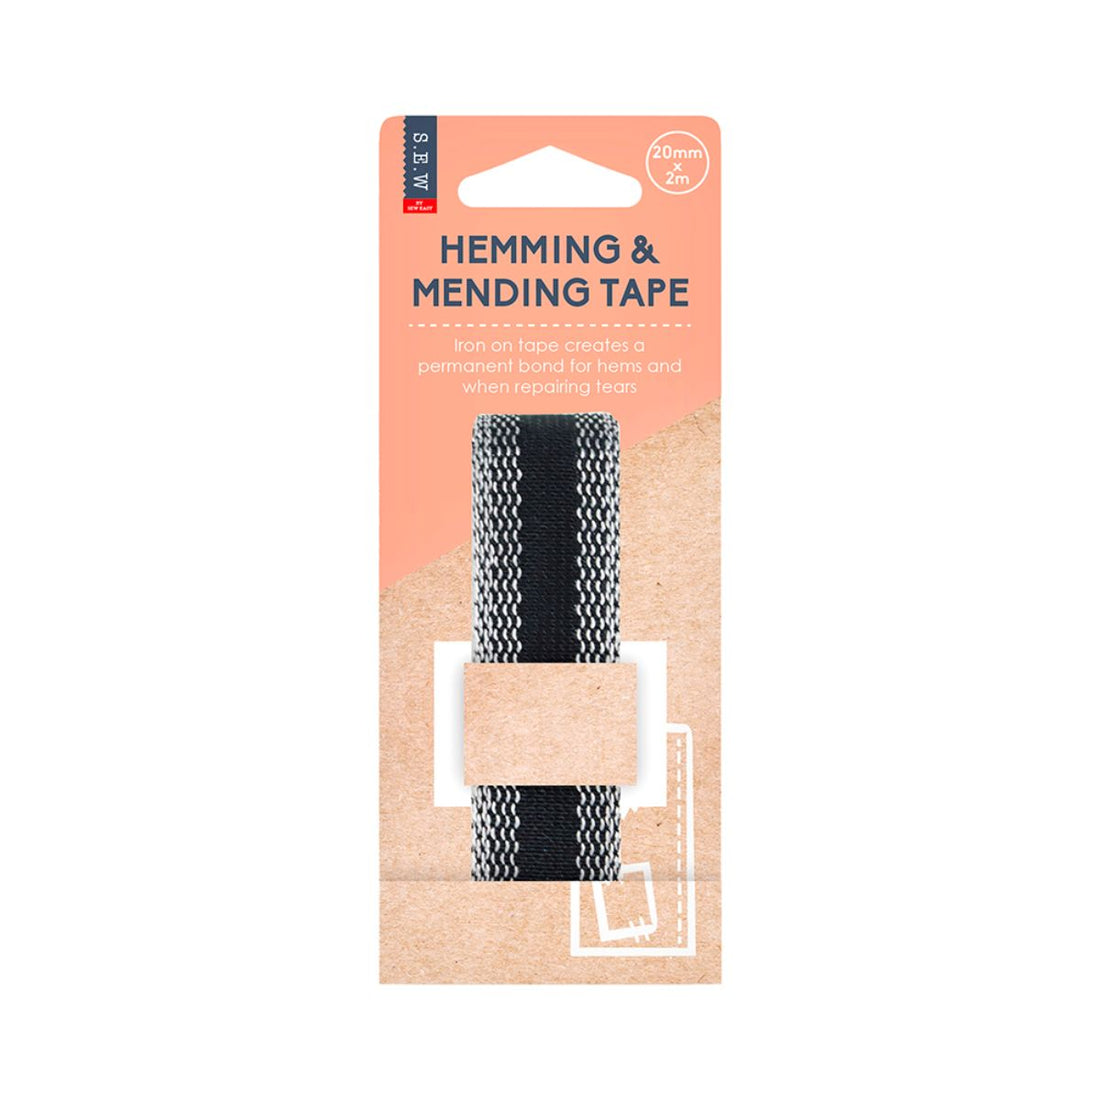 Sew Easy hemming and mending tape